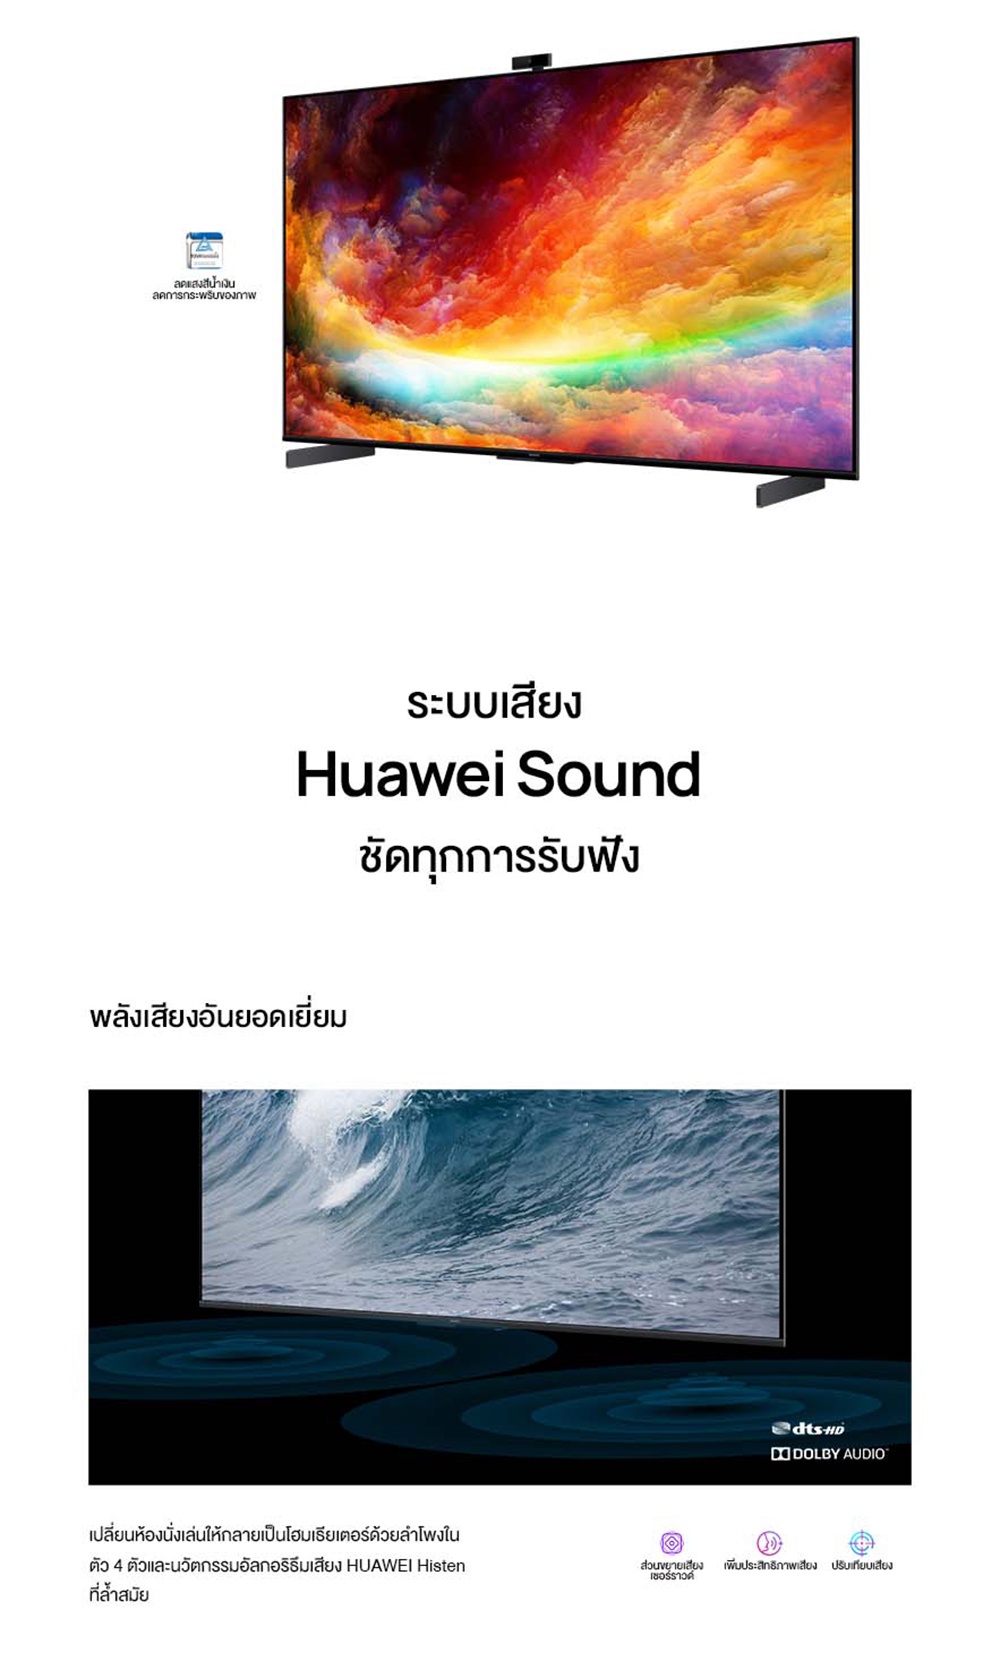 มุมมองเพิ่มเติมเกี่ยวกับ HUAWEI Vision S ขนาดหน้าจอ 65" วิดีโอคอลแบบ 1080P ด้วย MeeTime อัตราการรีเฟรชหน้าจอ 120 Hz ลำโพง Huawei Sound 4